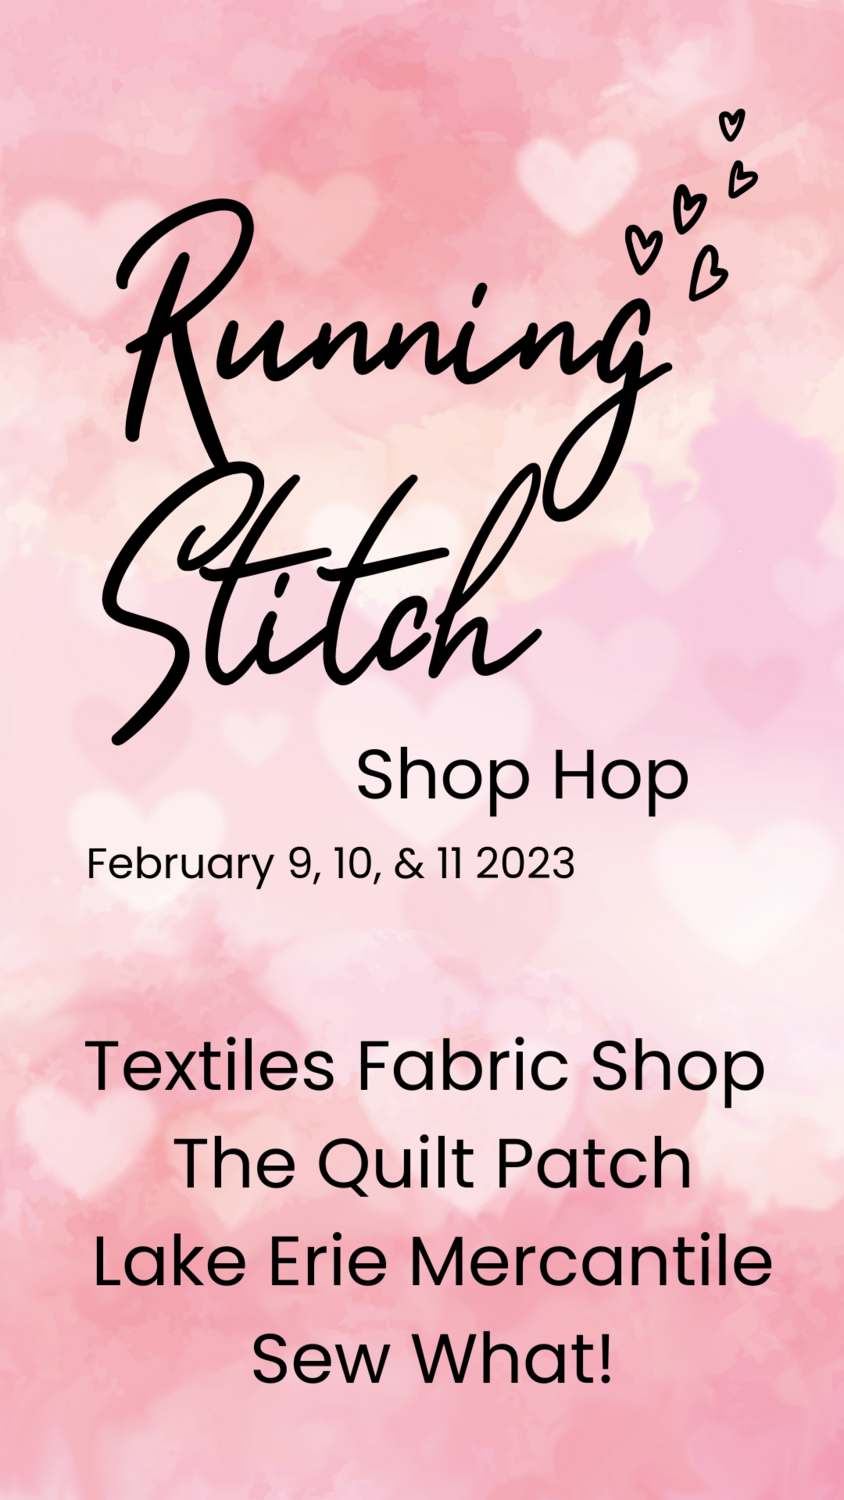 Running Stitch Shop Hop